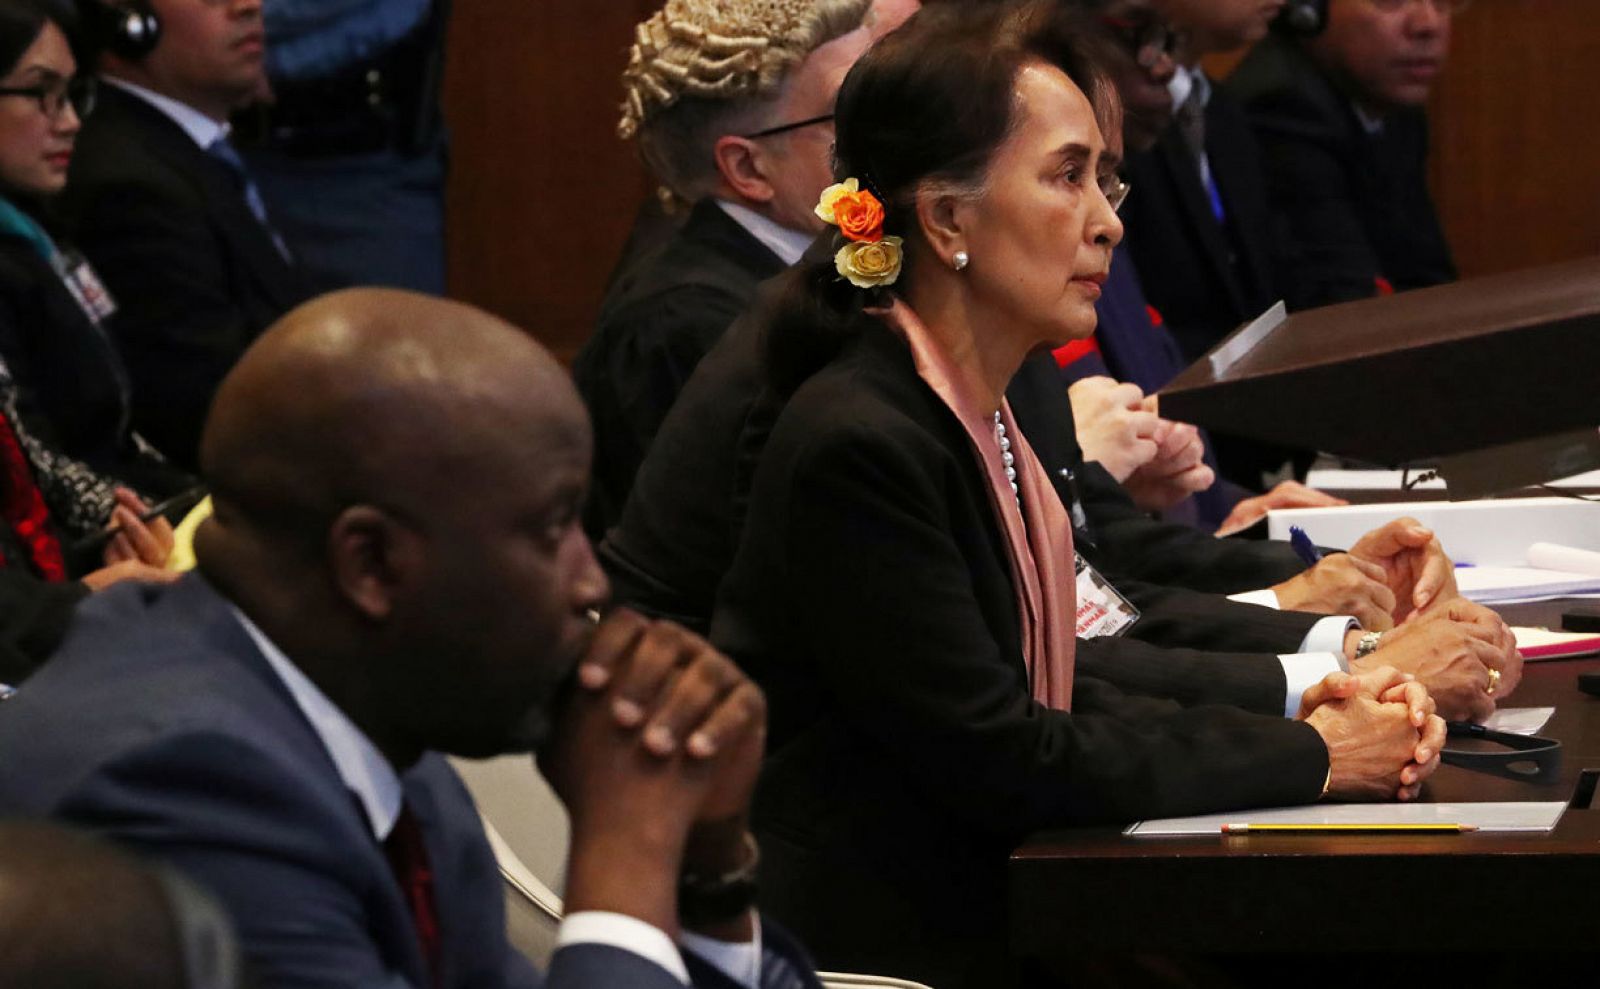 El ministro de Justicia de Gambia, Abubacarr Tambadou, y la líder de Myanmar, Aung San Suu Kyi, asisten a una audiencia en un caso presentado por Gambia contra Myanmar por genocidio contra la población minoritaria musulmana rohinyá